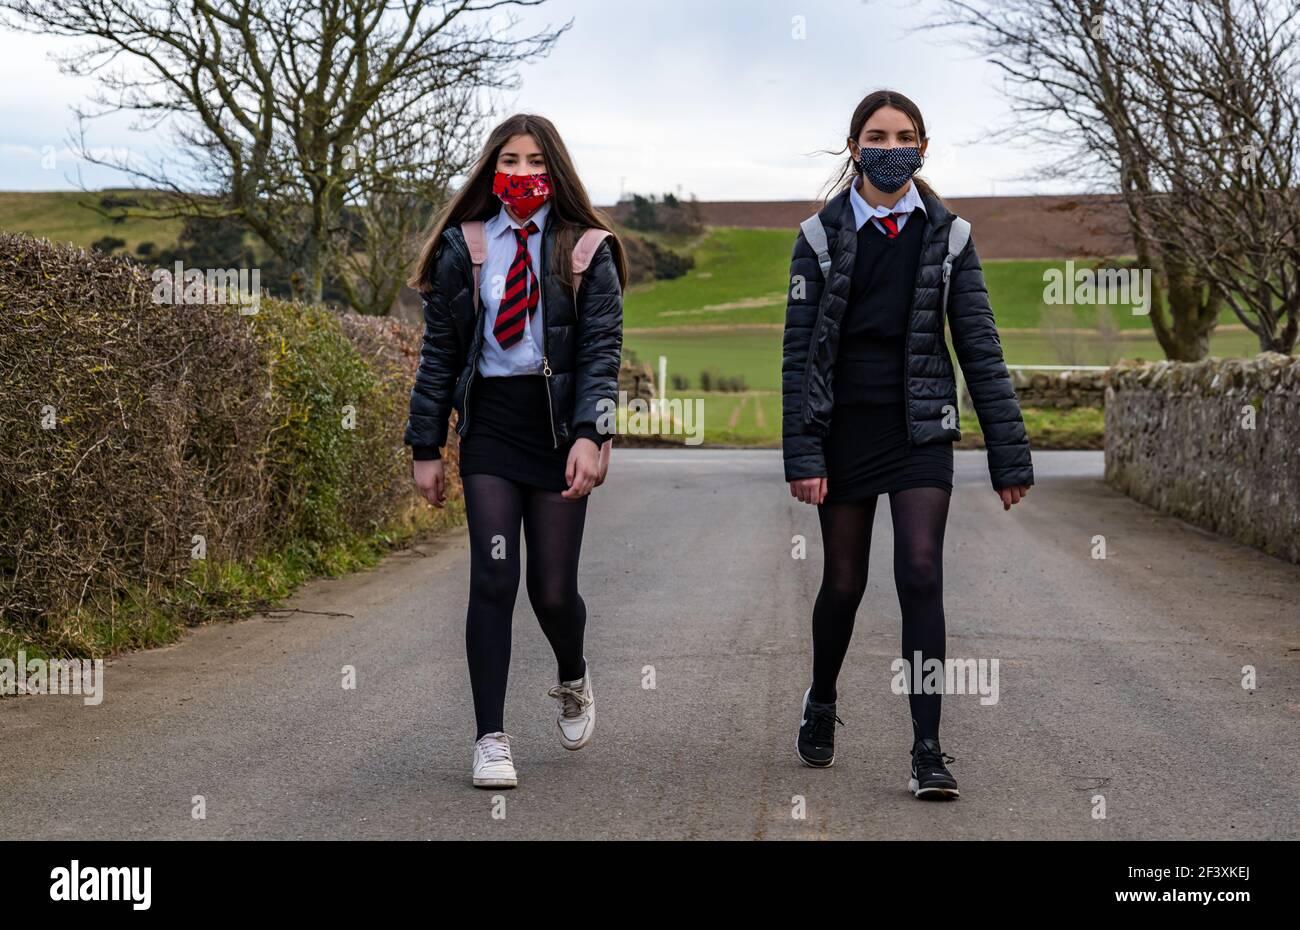 Filles jumelles, écoliers du secondaire en uniforme scolaire marchant sur la route de campagne, East Lothian, Écosse, Royaume-Uni Banque D'Images